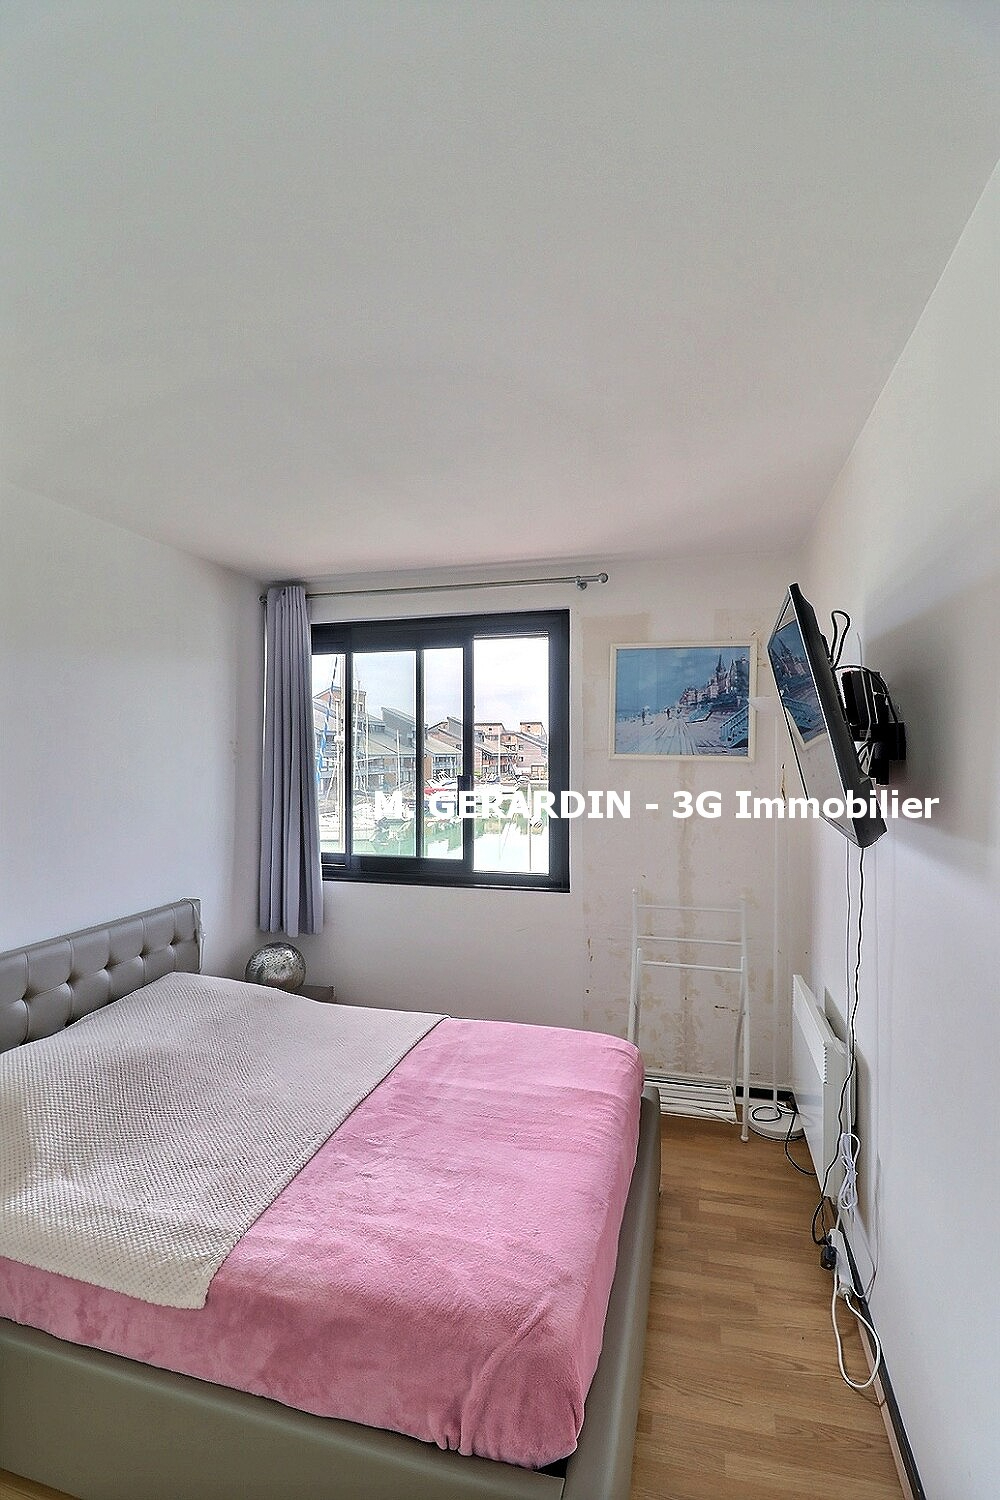 Photo 5 | Deauville (14800) | Appartement de 53.00 m² | Type 3 | 357000 € |  Référence: 187746PG